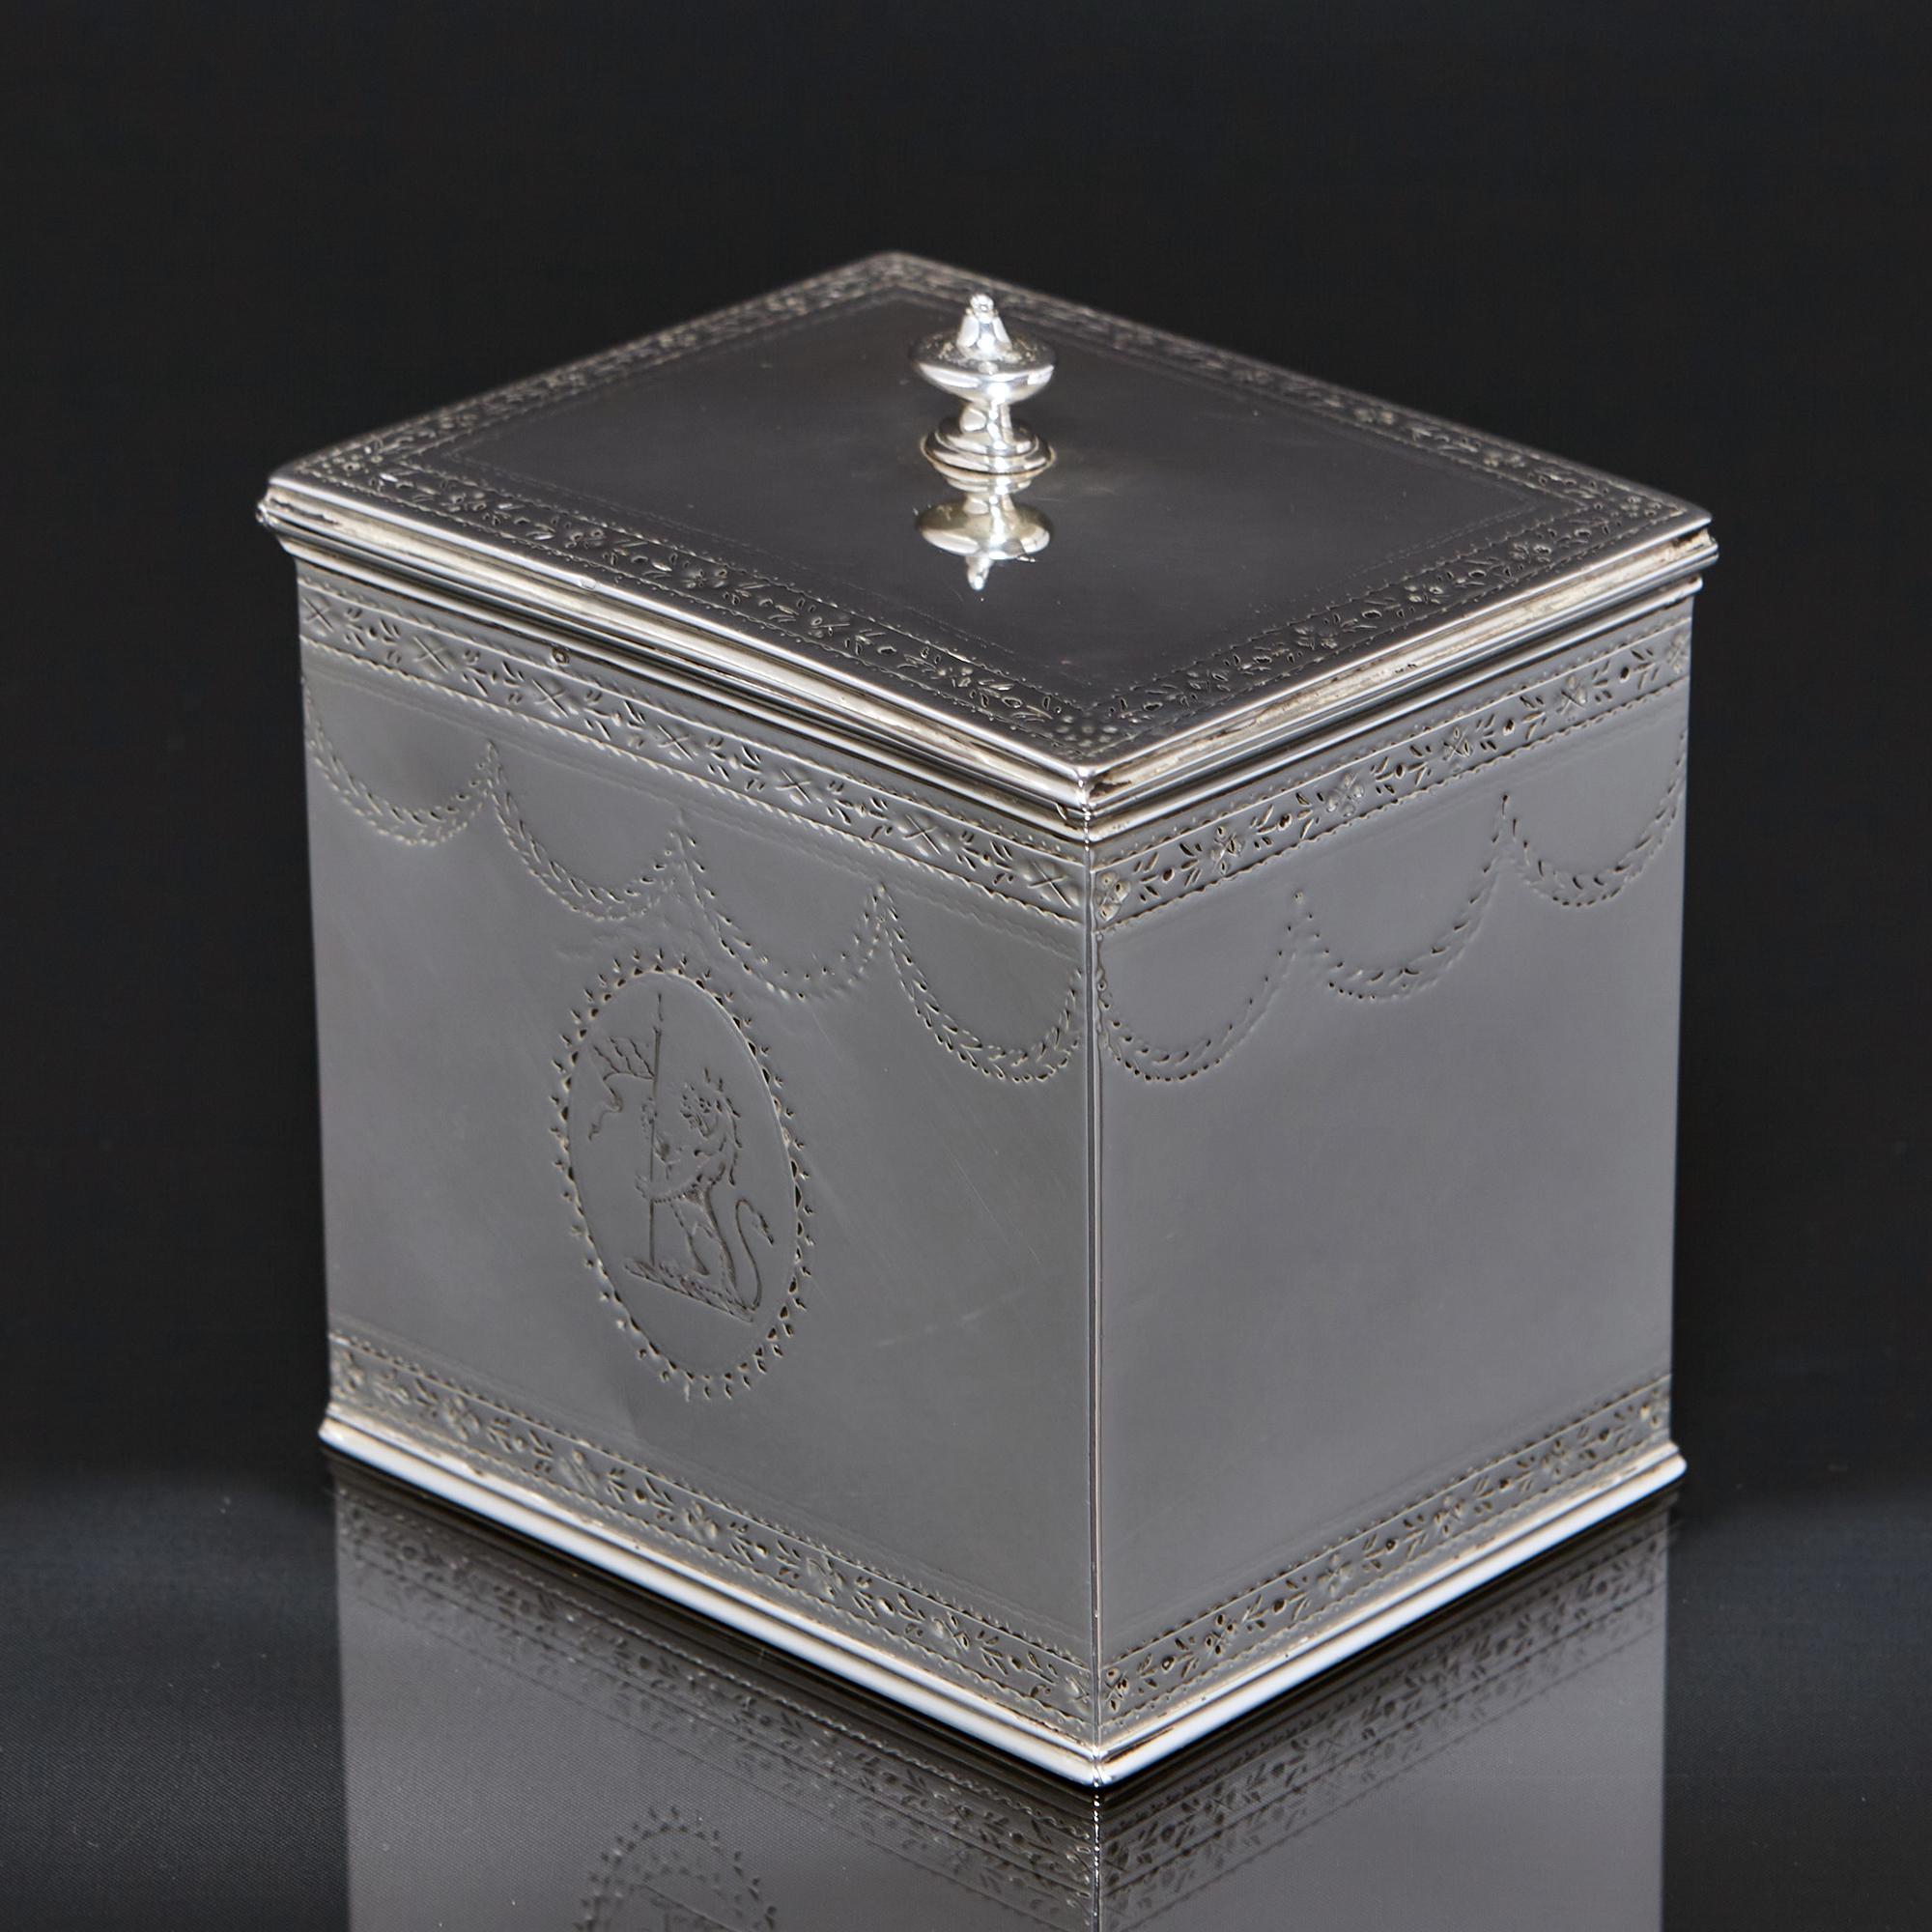 Boîte à thé classique en argent de la fin du XVIIIe siècle, de forme oblongue, avec des bandes et des guirlandes délicatement gravées à la main sur les côtés, et un couvercle rabattable surmonté d'un fleuron ovale en forme d'urne. 

L'une des faces